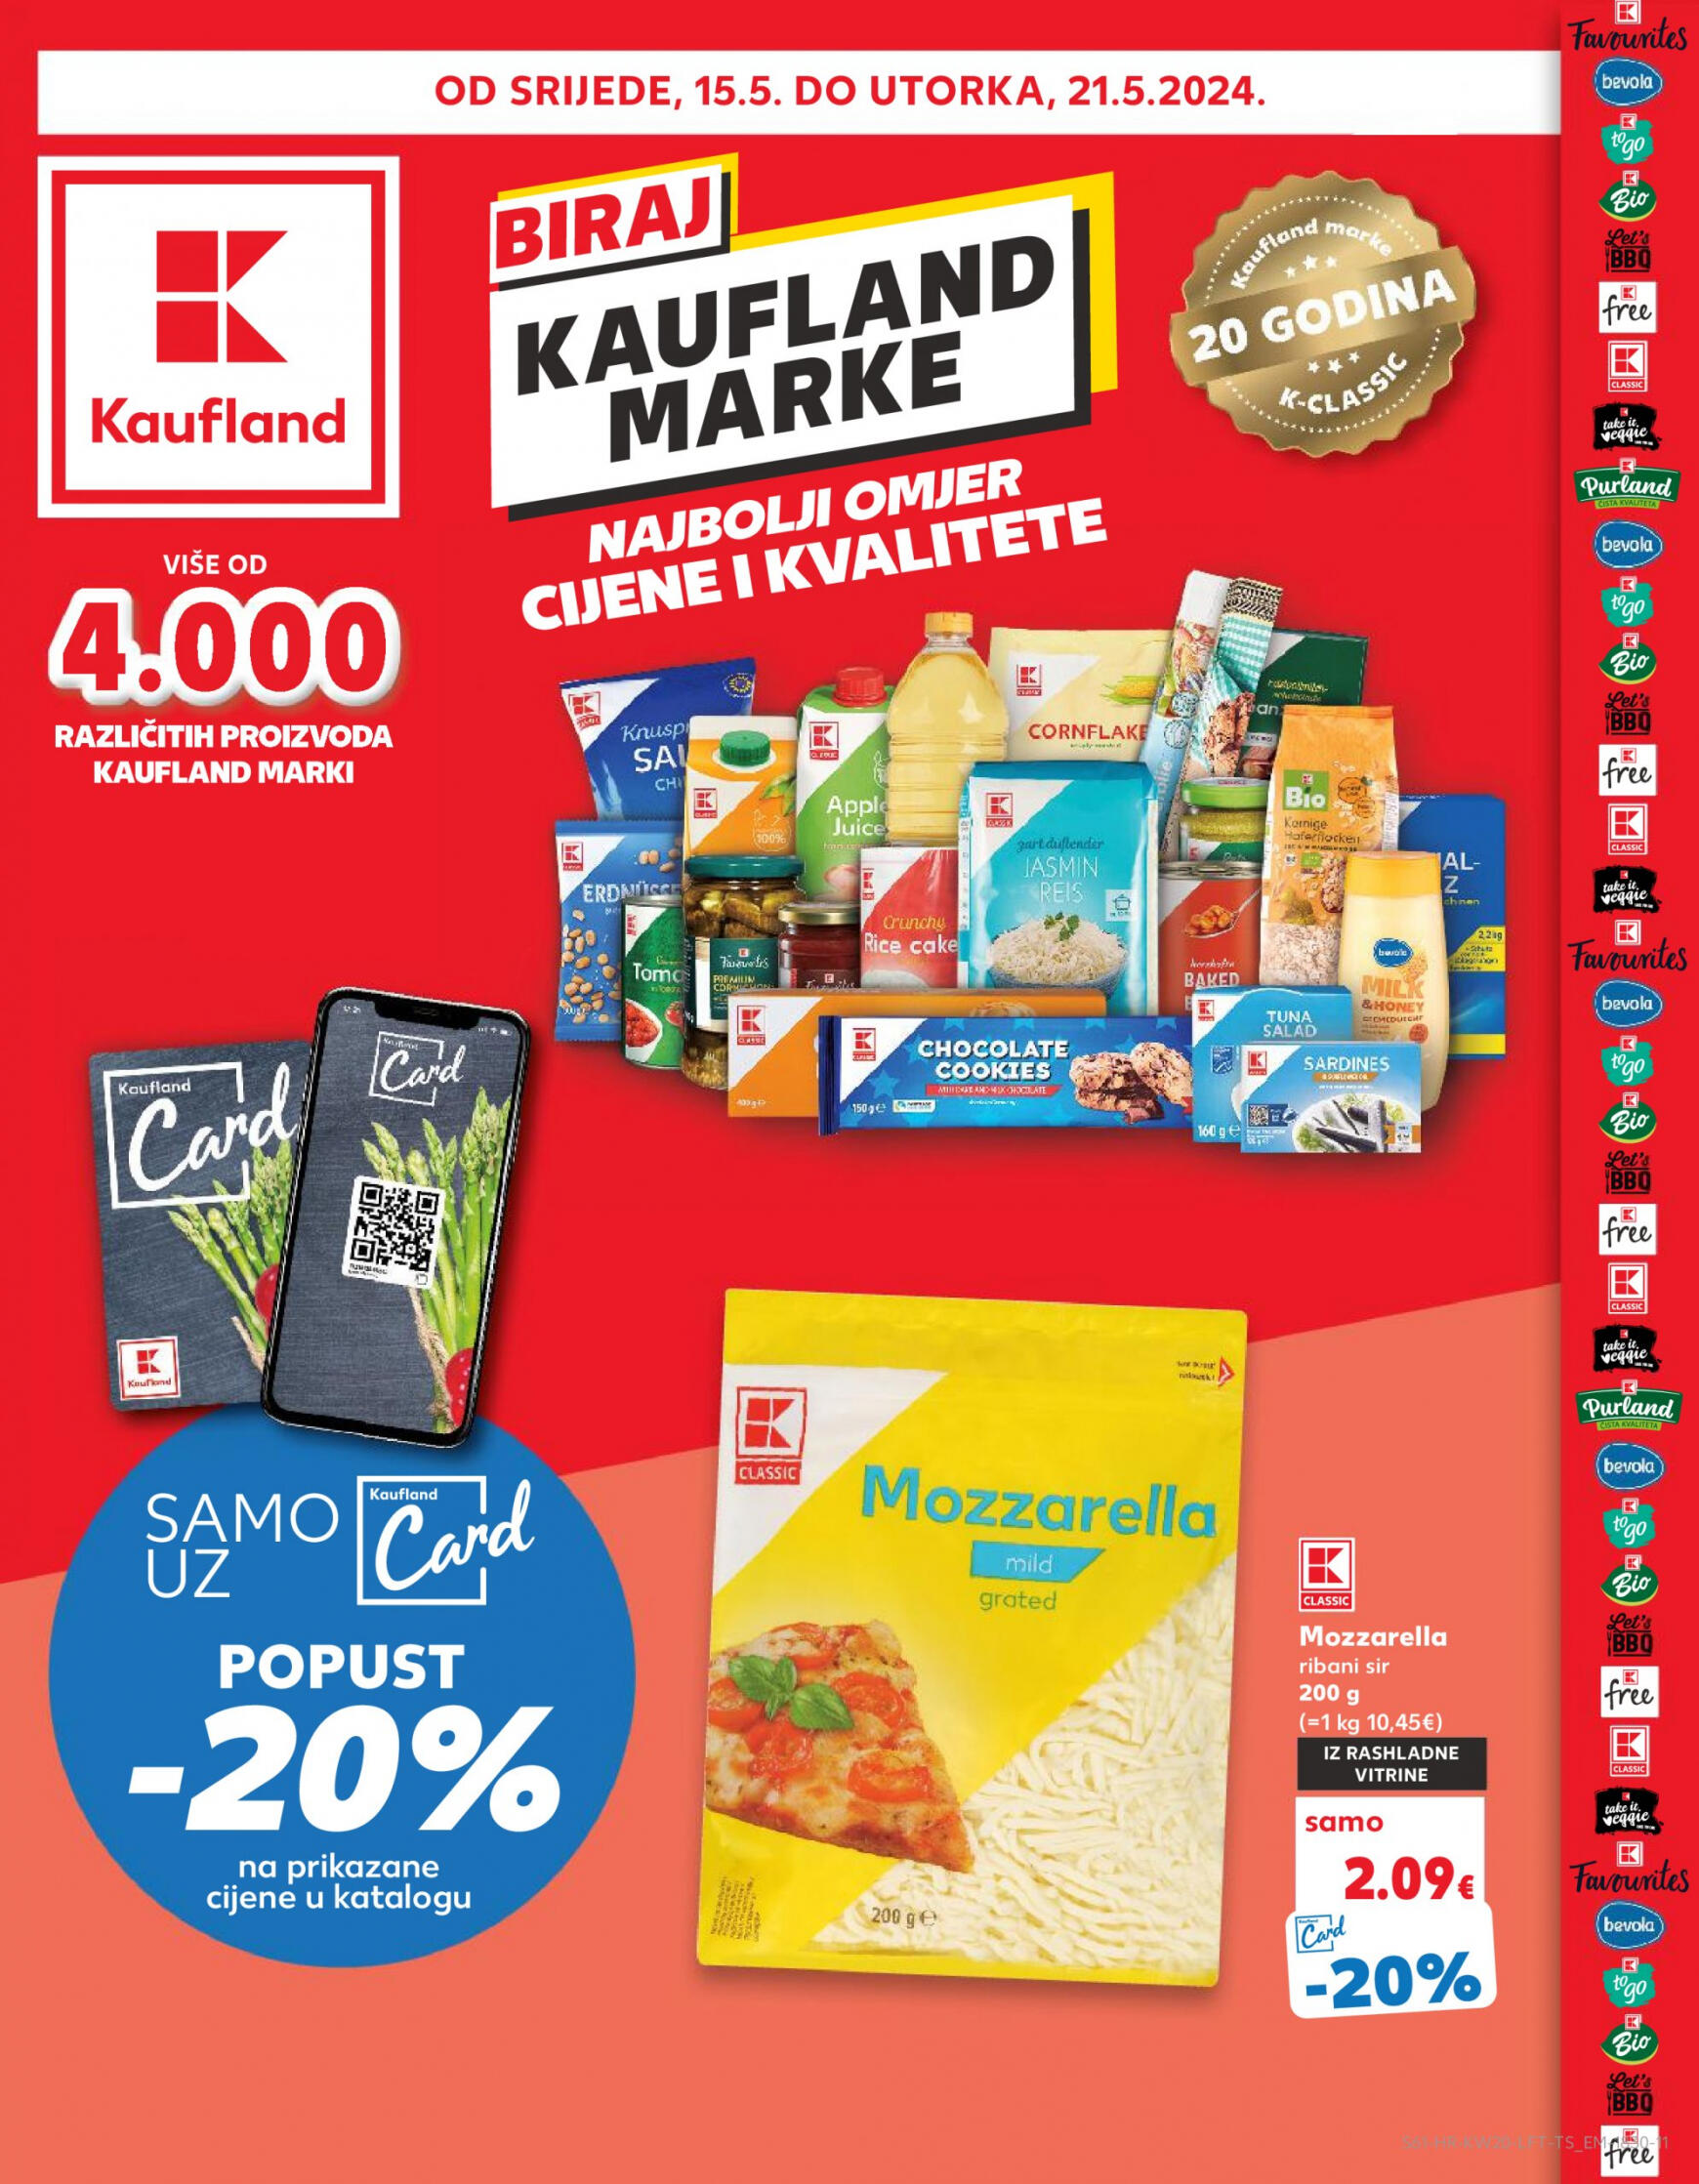 kaufland - Novi katalog Kaufland 15.05. - 21.05. - page: 61